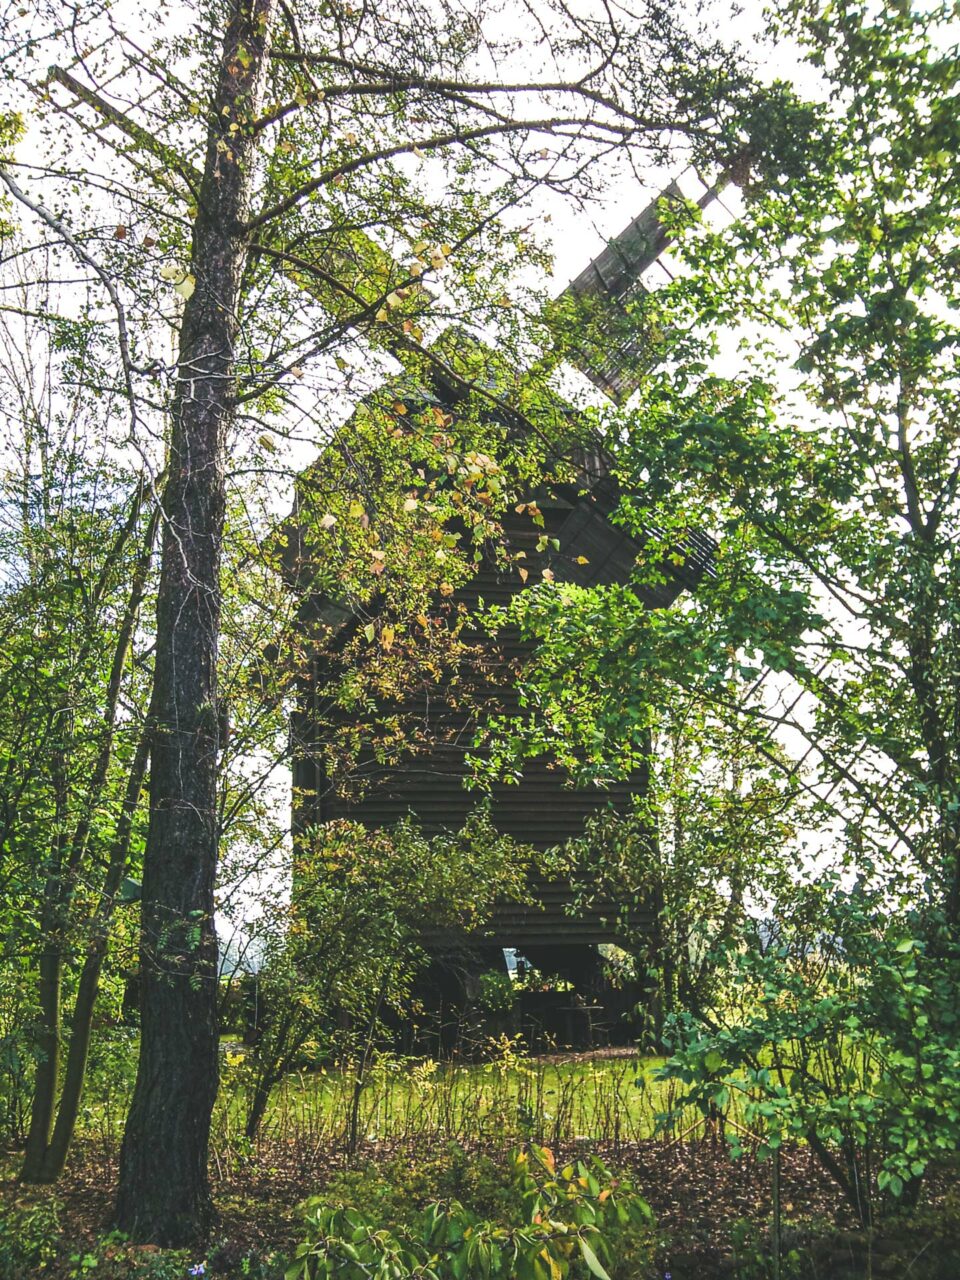 Direkt am Weg gelegen: die Hohlenbrücker Mühle. Eine original erhaltene Bockwindmühle aus der Mitte der 18. Jahrhunderts. Heute ausgebaut zum Wohnhaus.